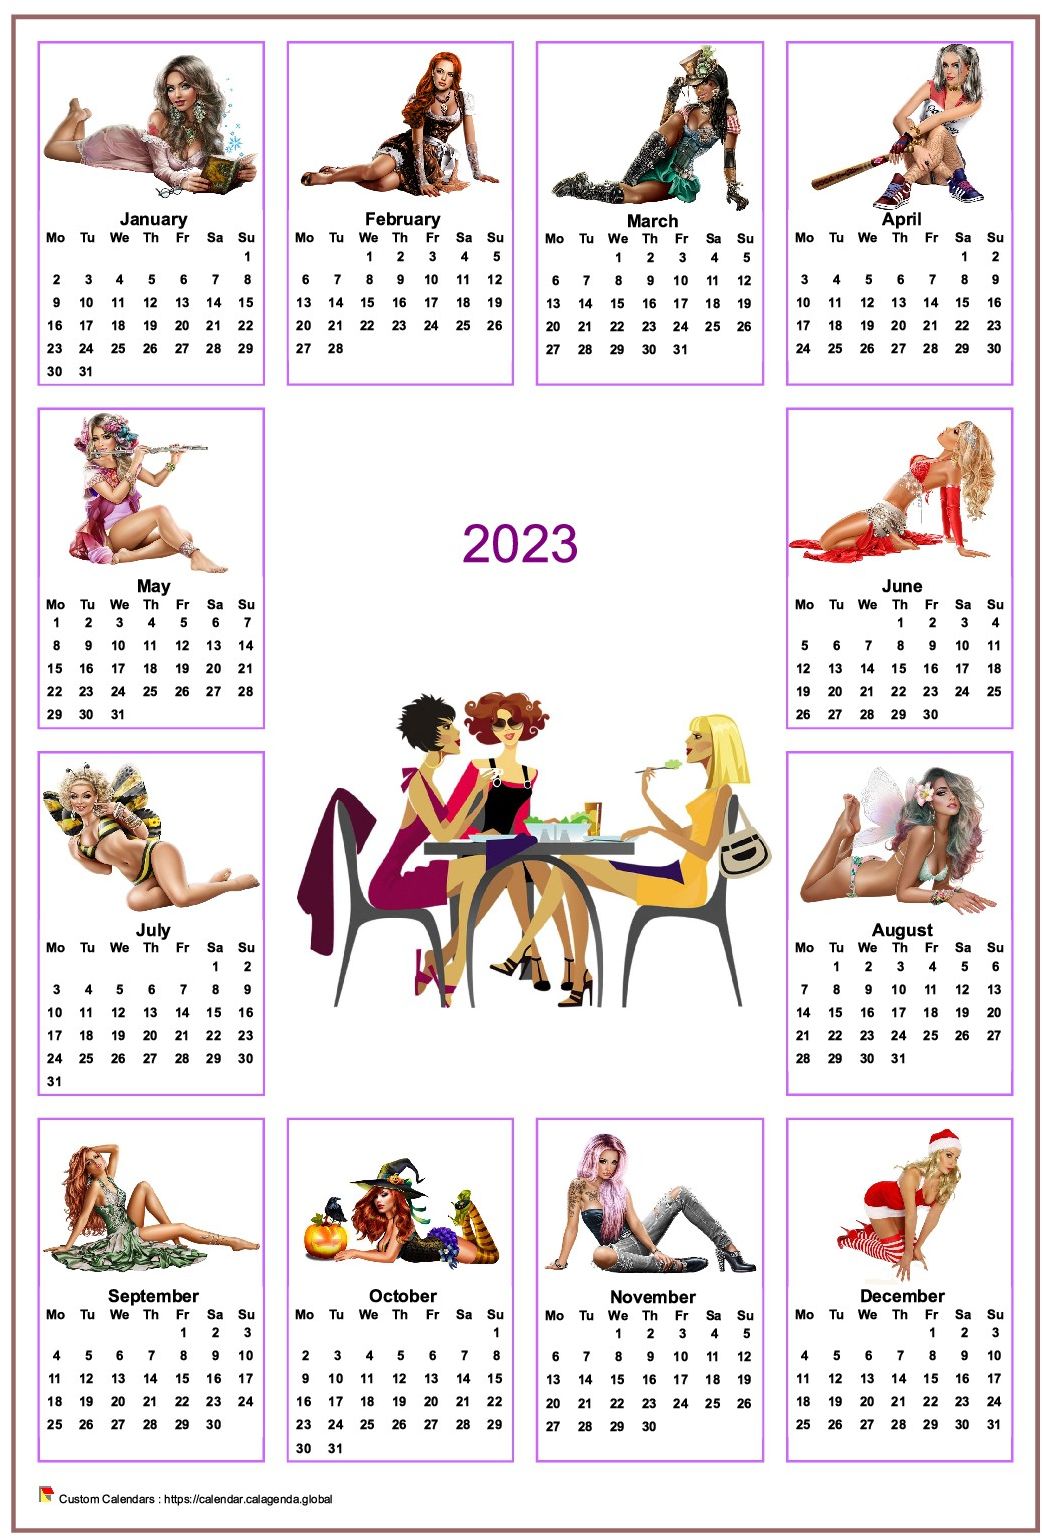  2023 annual calendar tubes women